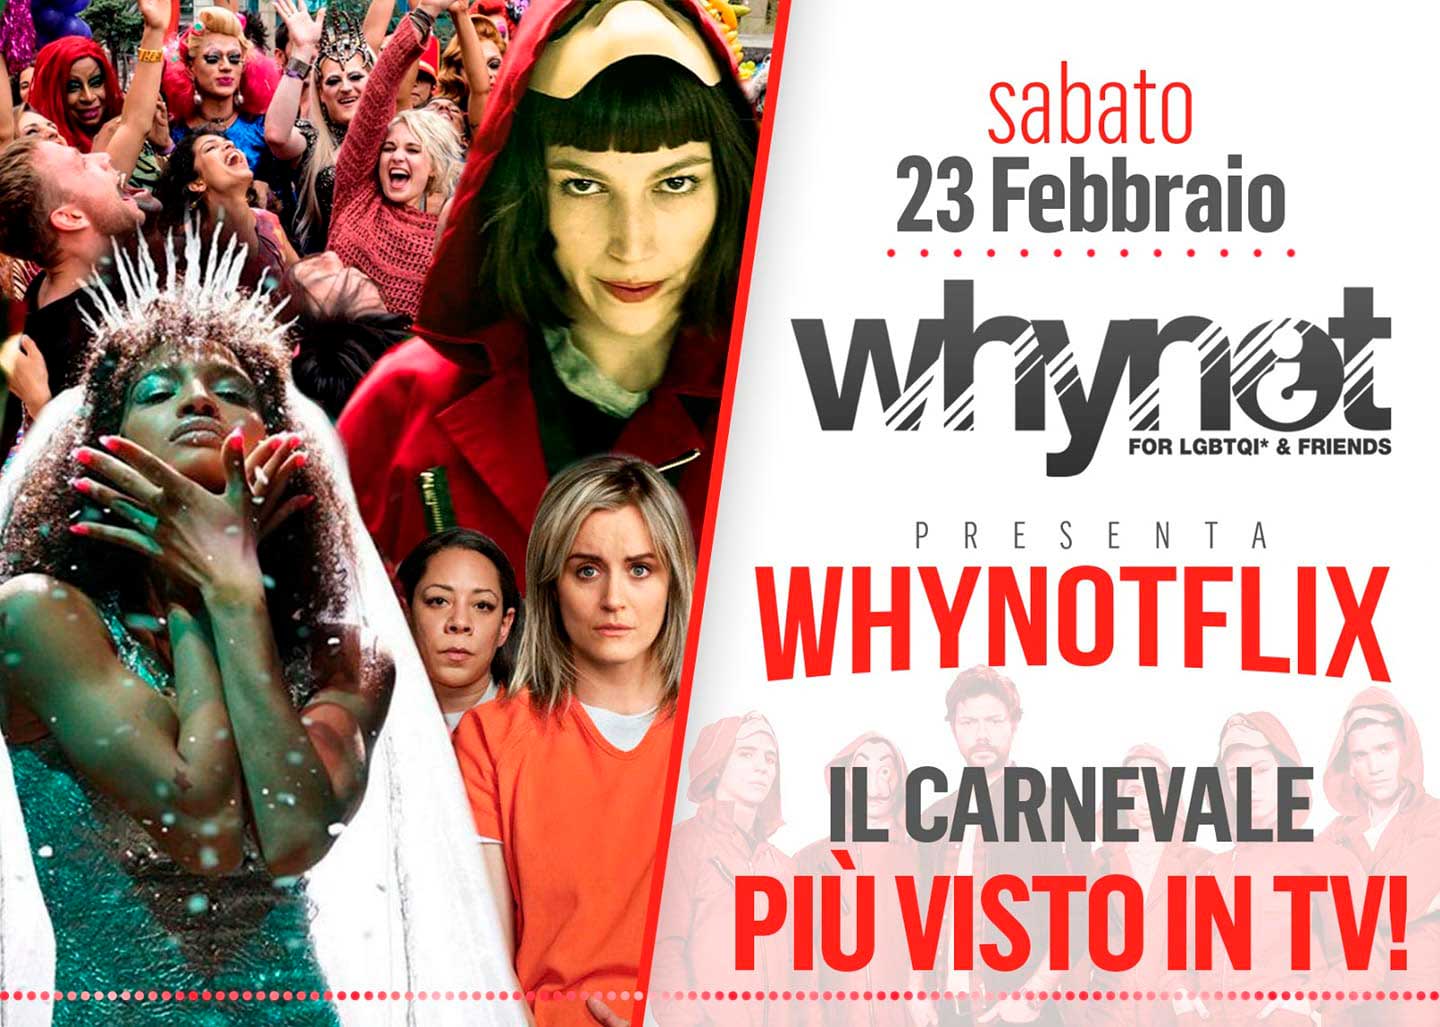 WhyNot¿: Sabato 23 il party di carnevale WHYNOTFLIX ispirato alle serie tv più famose